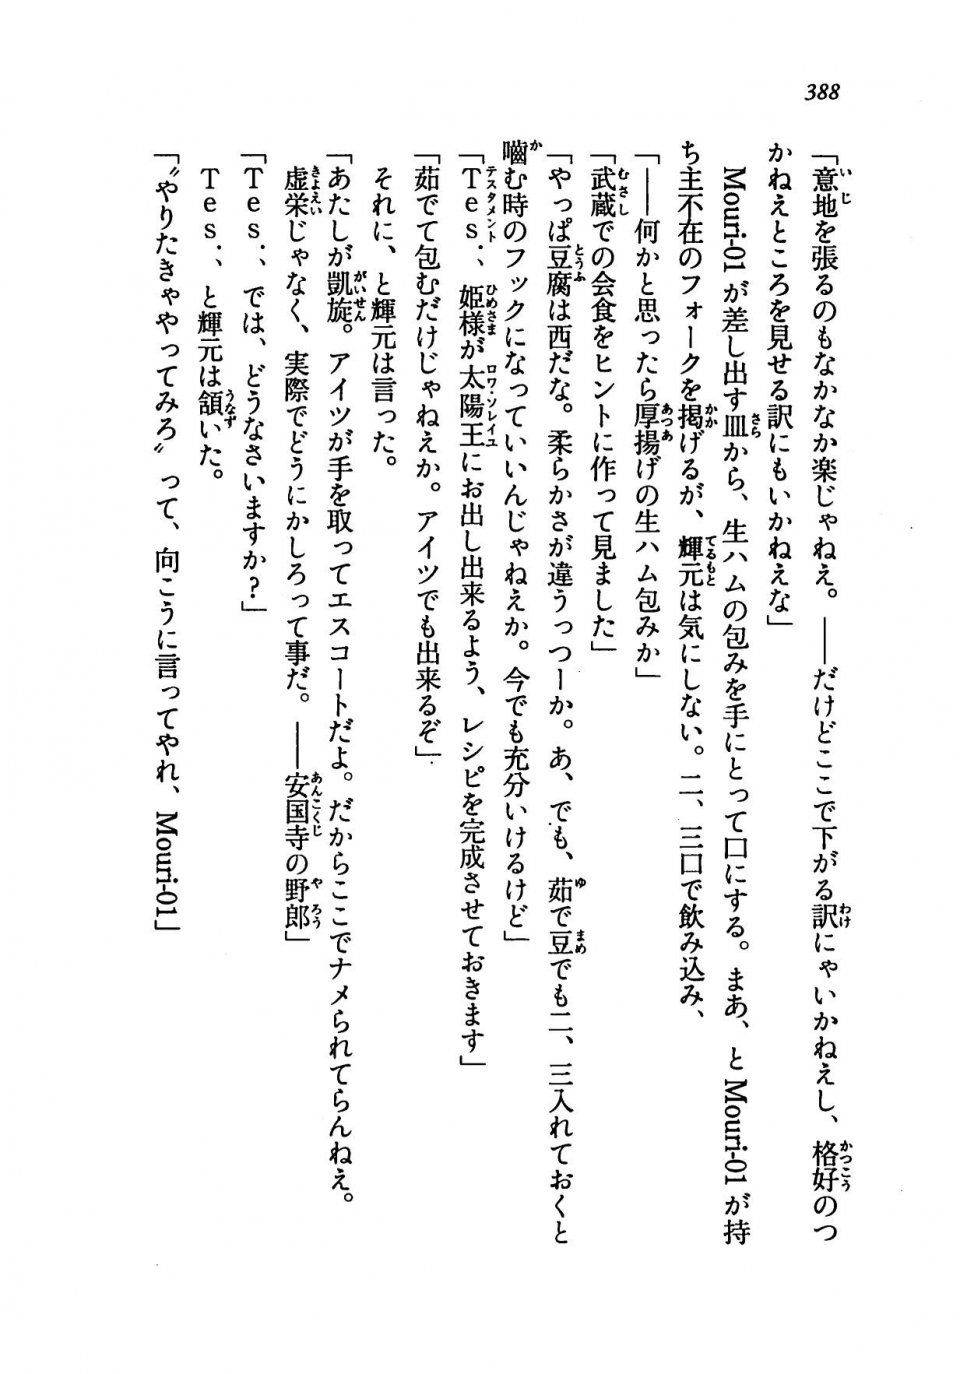 Kyoukai Senjou no Horizon LN Vol 19(8A) - Photo #388